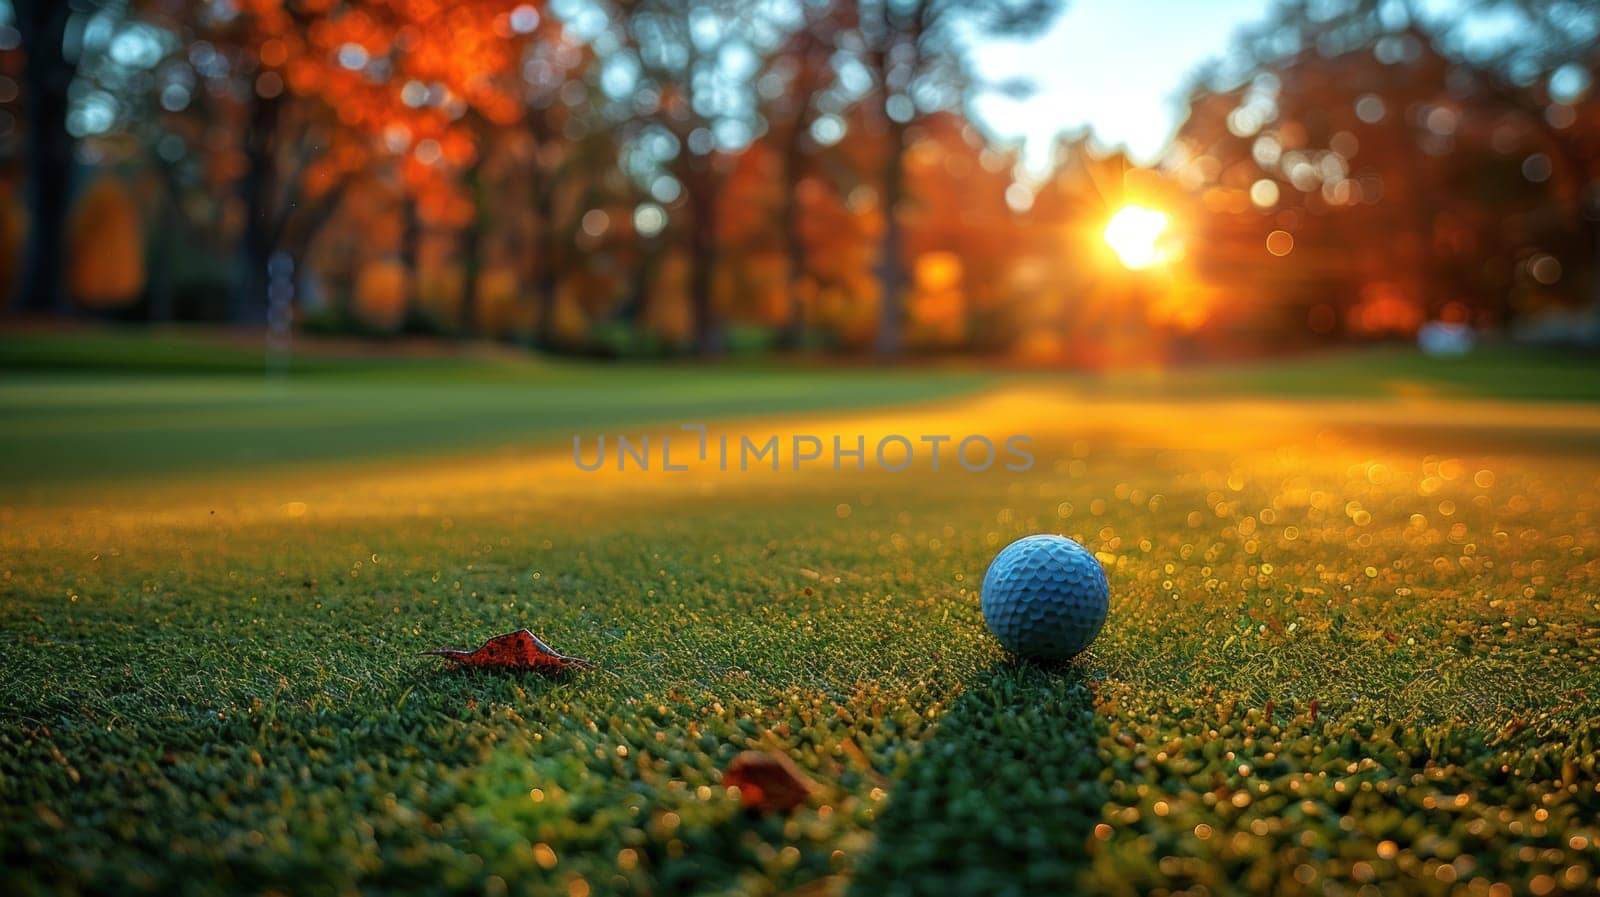 A golf ball is sitting on a green grass field.